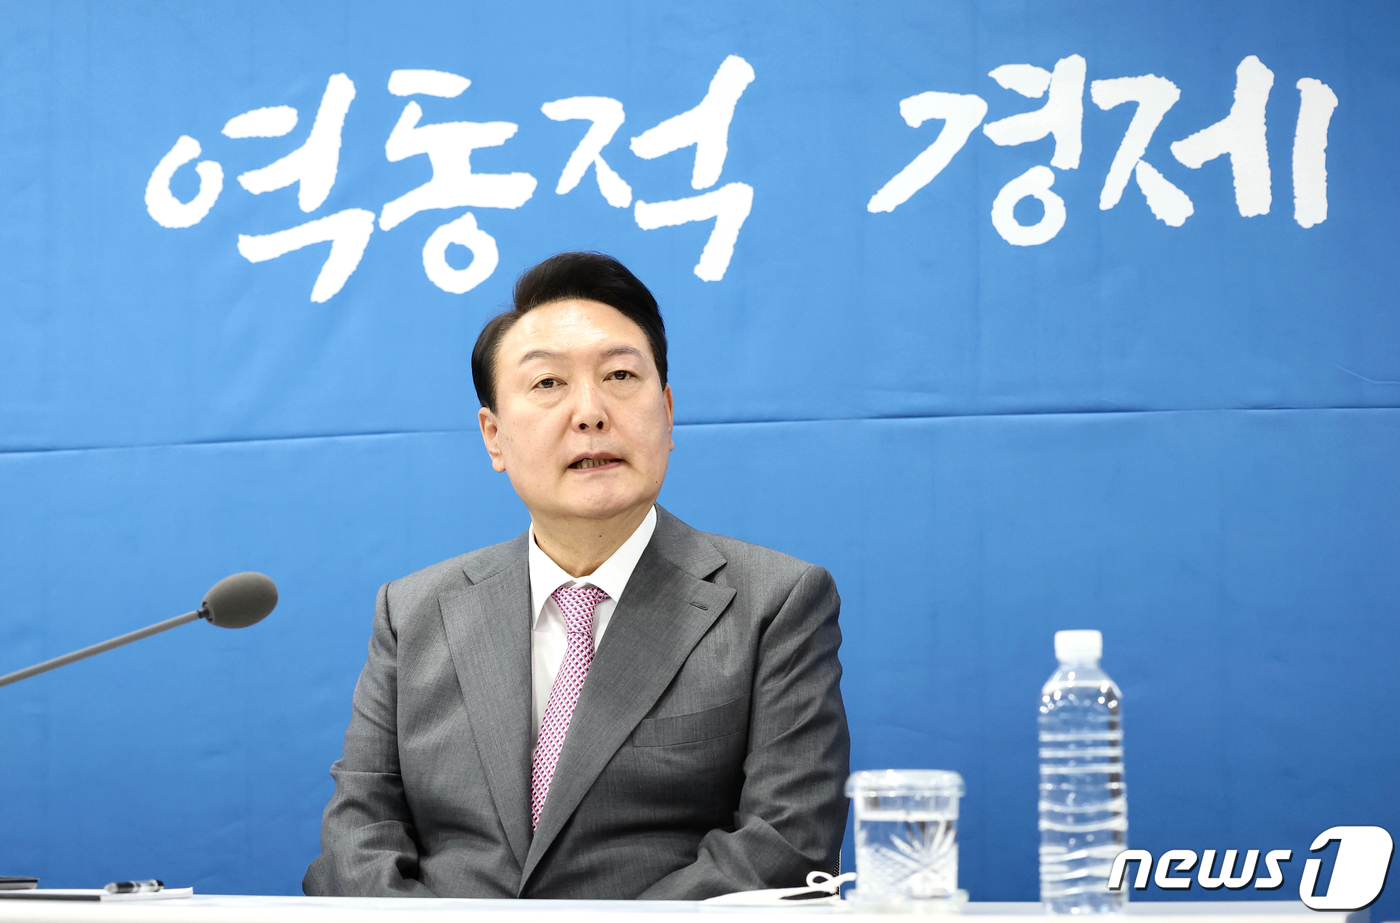 혐오발언·성비위尹정부검증실패논란…국민눈높이못맞춰